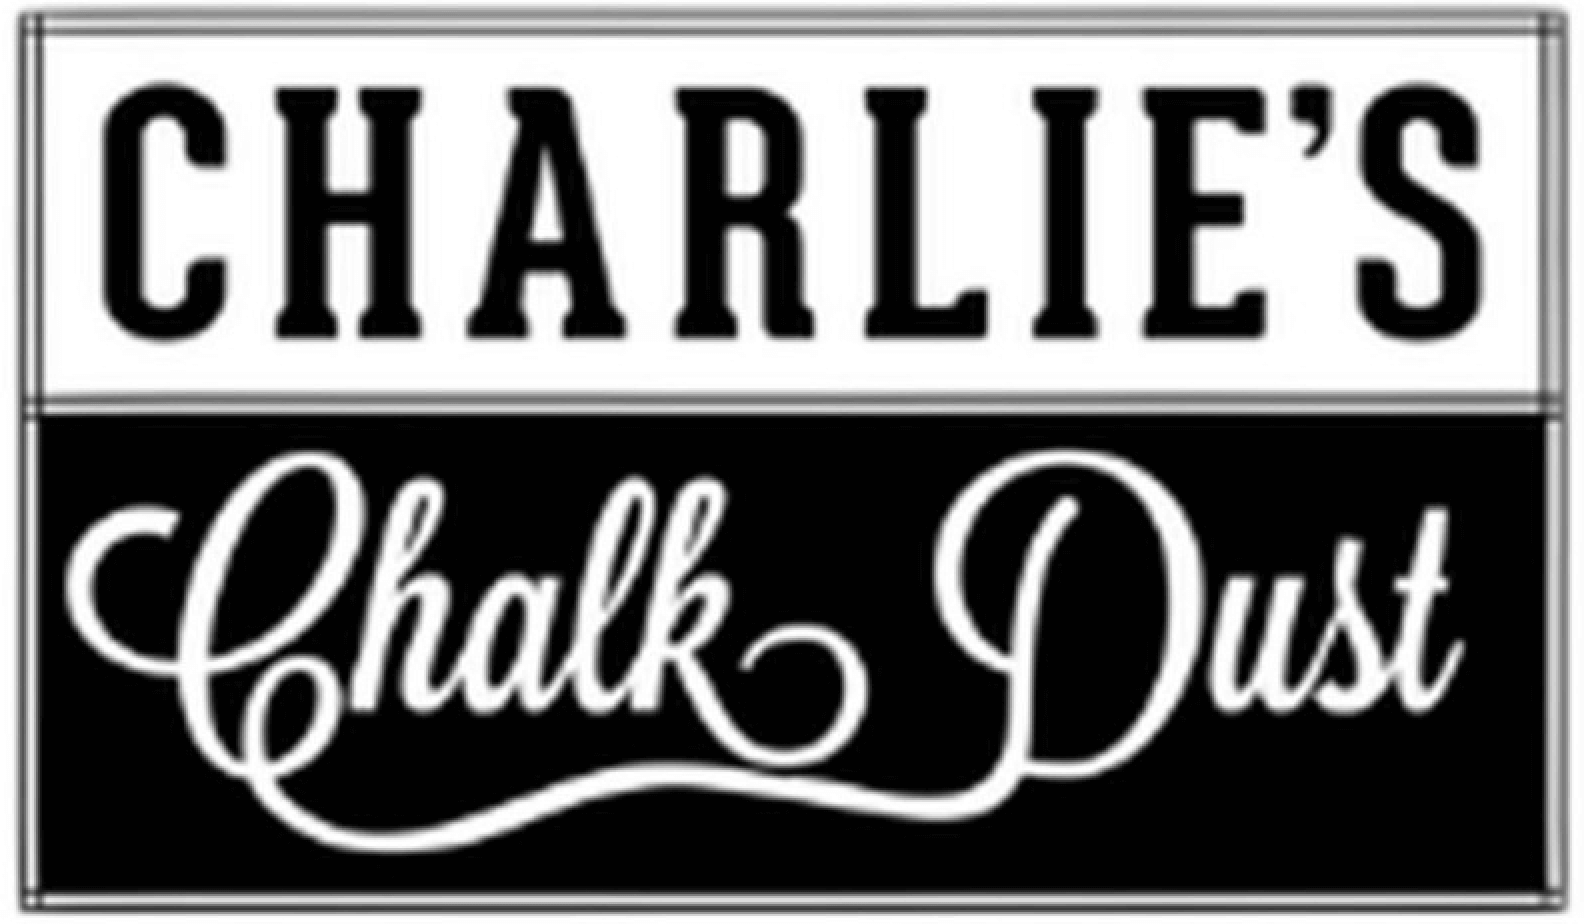 Charlie's Chalk Dust - E-liquide